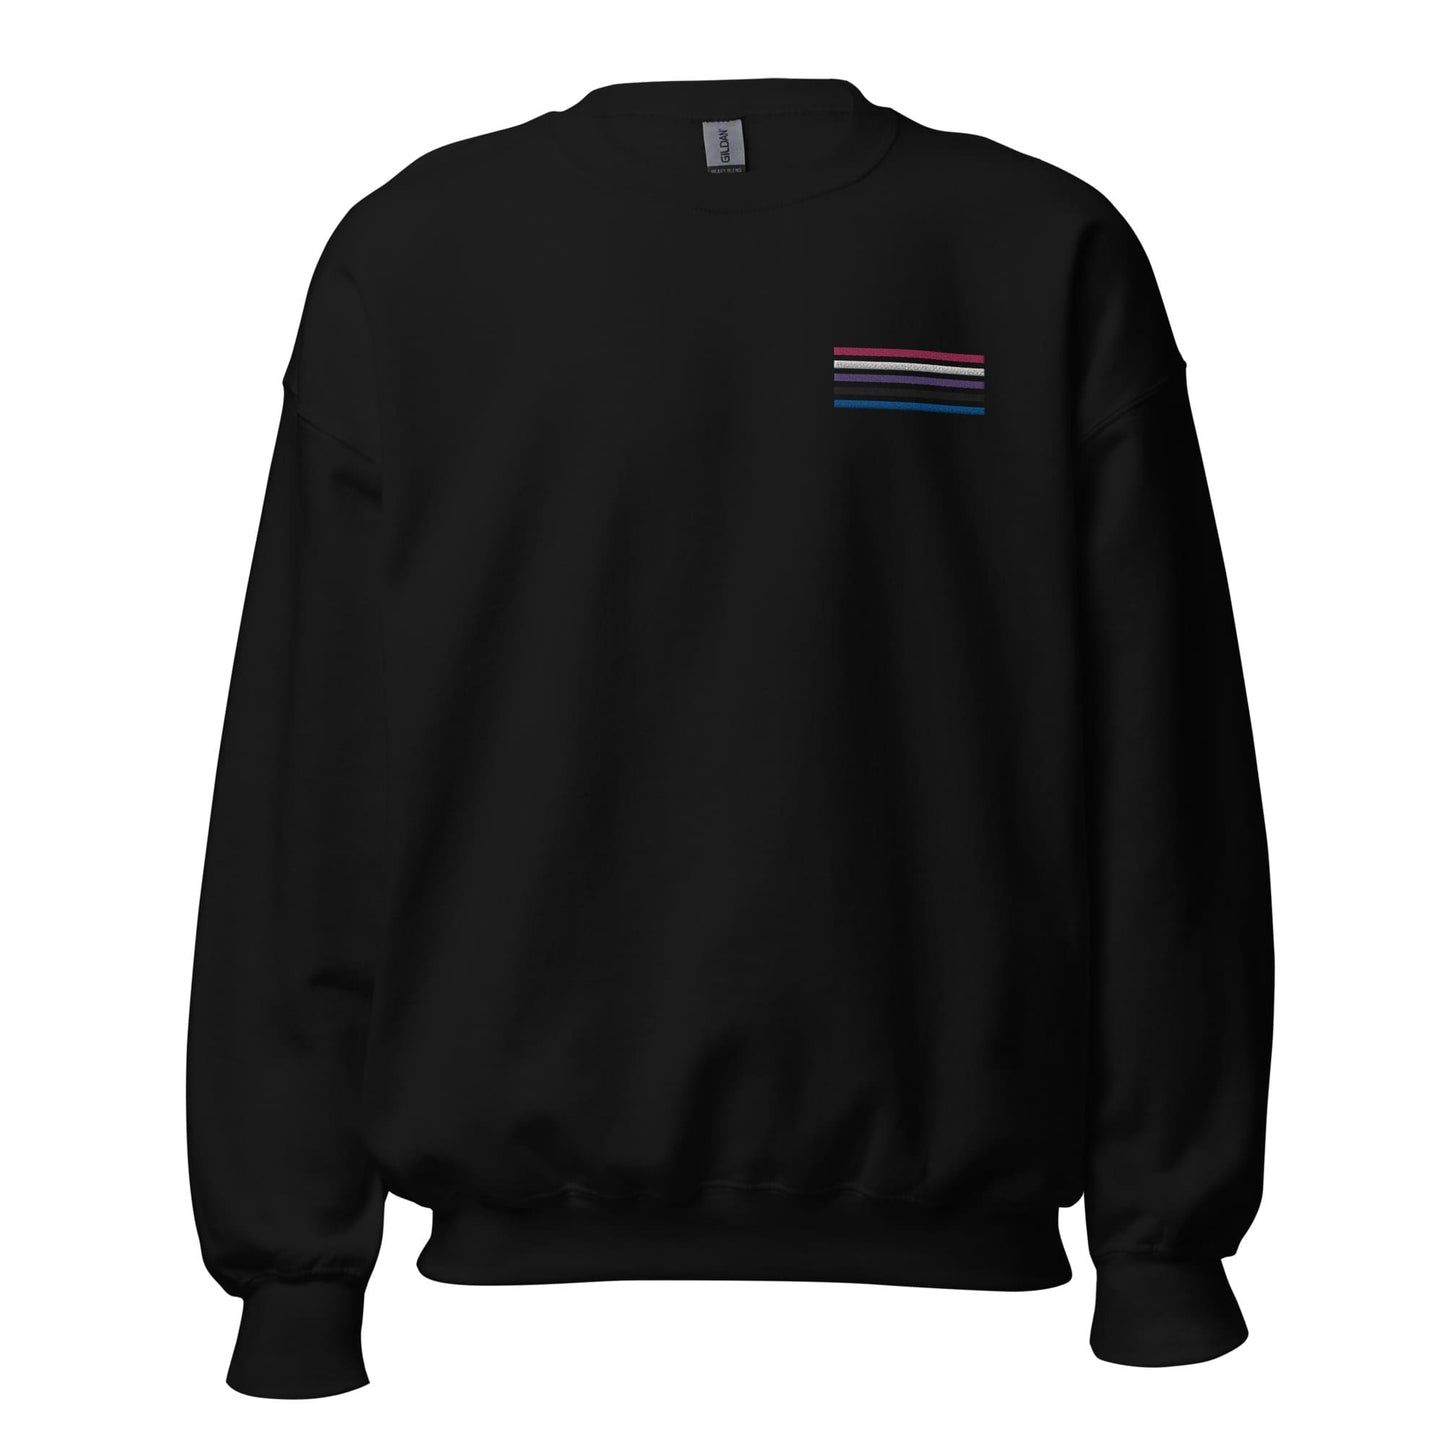 genderfluid sweatshirt, subtle gender fluid pride flag embroidered pocket design sweater, hang